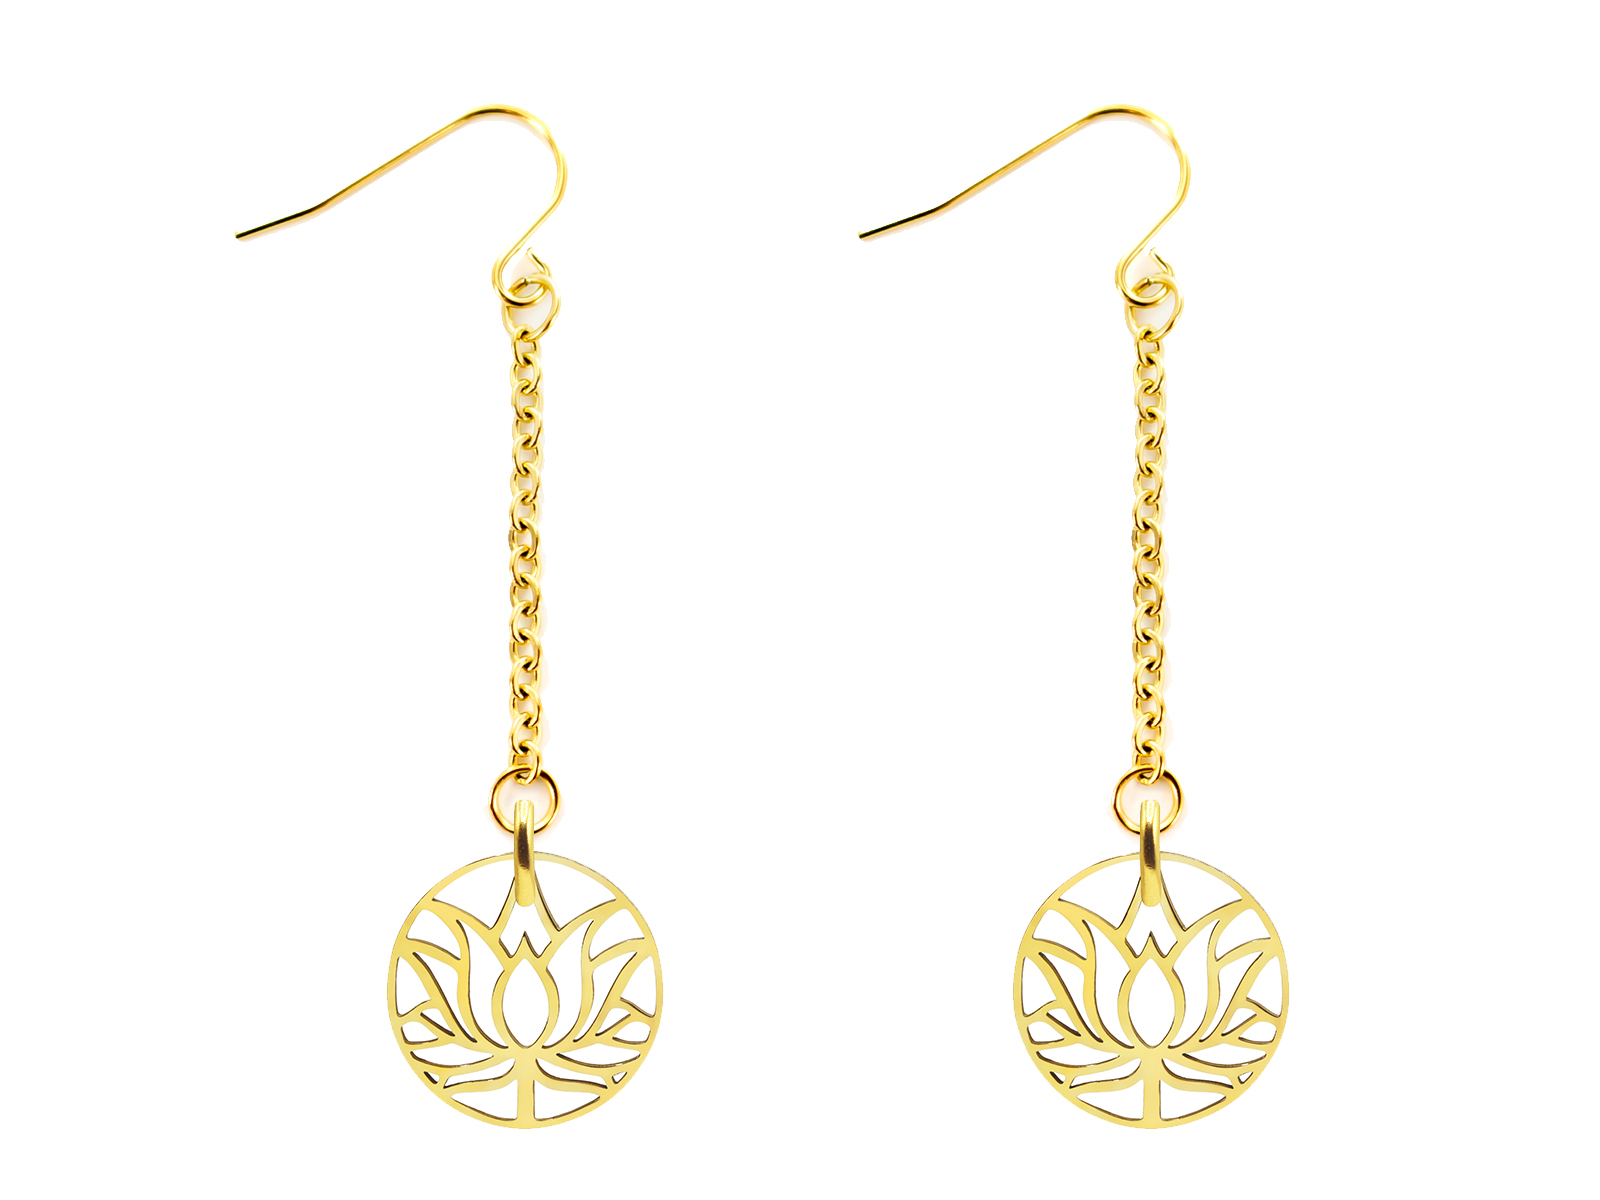 Boucles d'oreilles chaine acier 25mm agrémentées de pendentifs lotus en acier doré